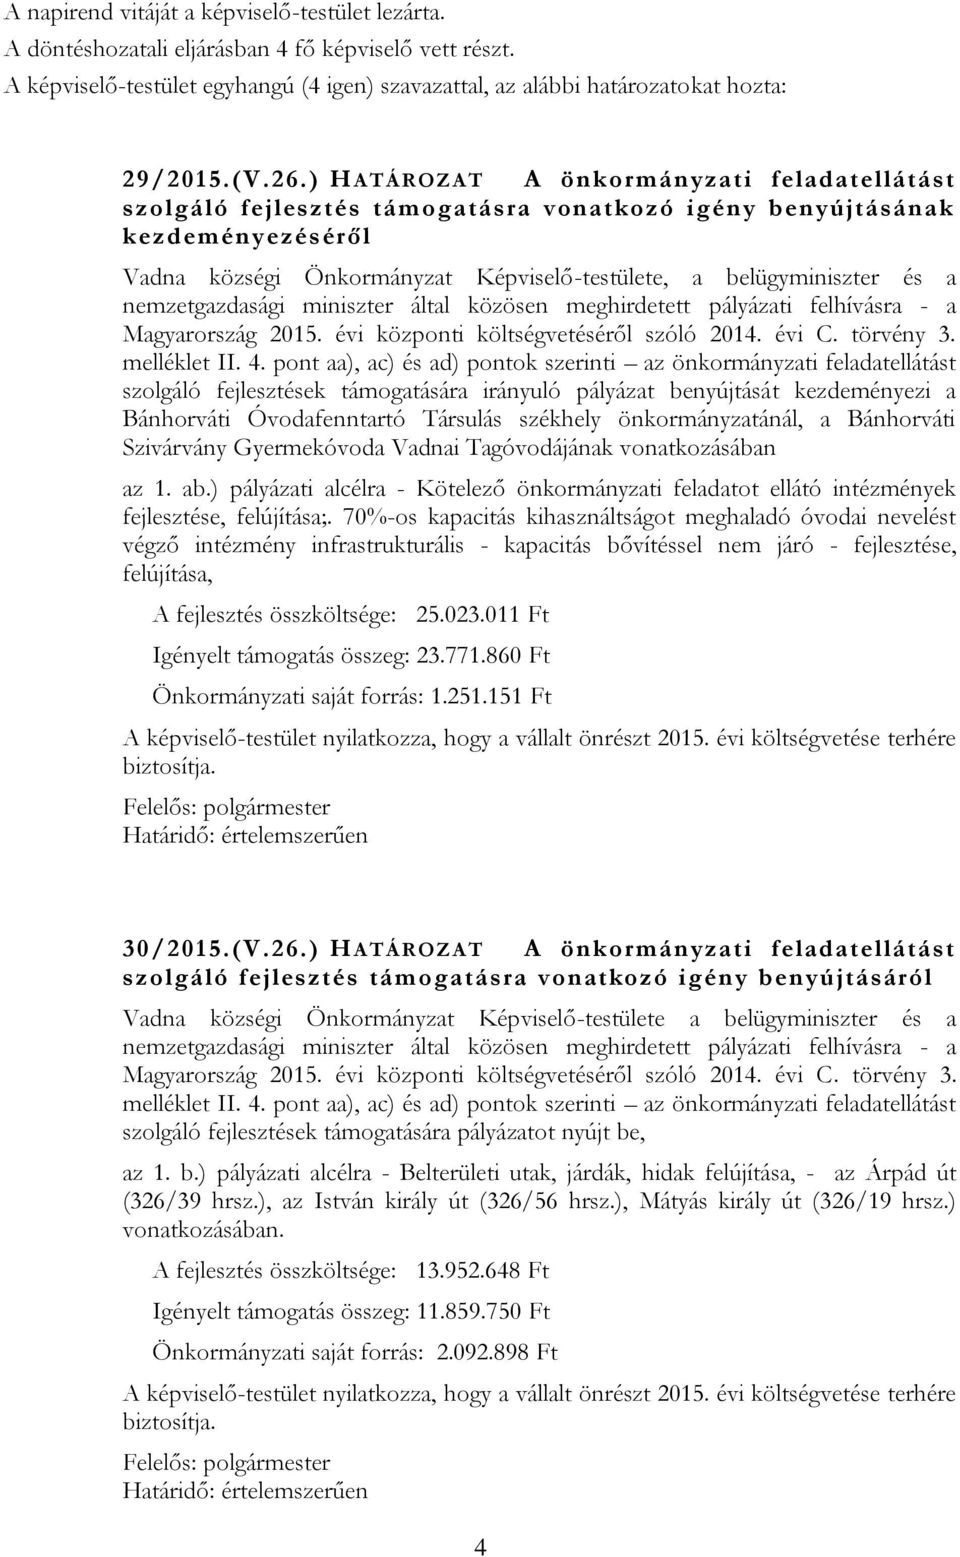 nemzetgazdasági miniszter által közösen meghirdetett pályázati felhívásra - a Magyarország 2015. évi központi költségvetéséről szóló 2014. évi C. törvény 3. melléklet II. 4.